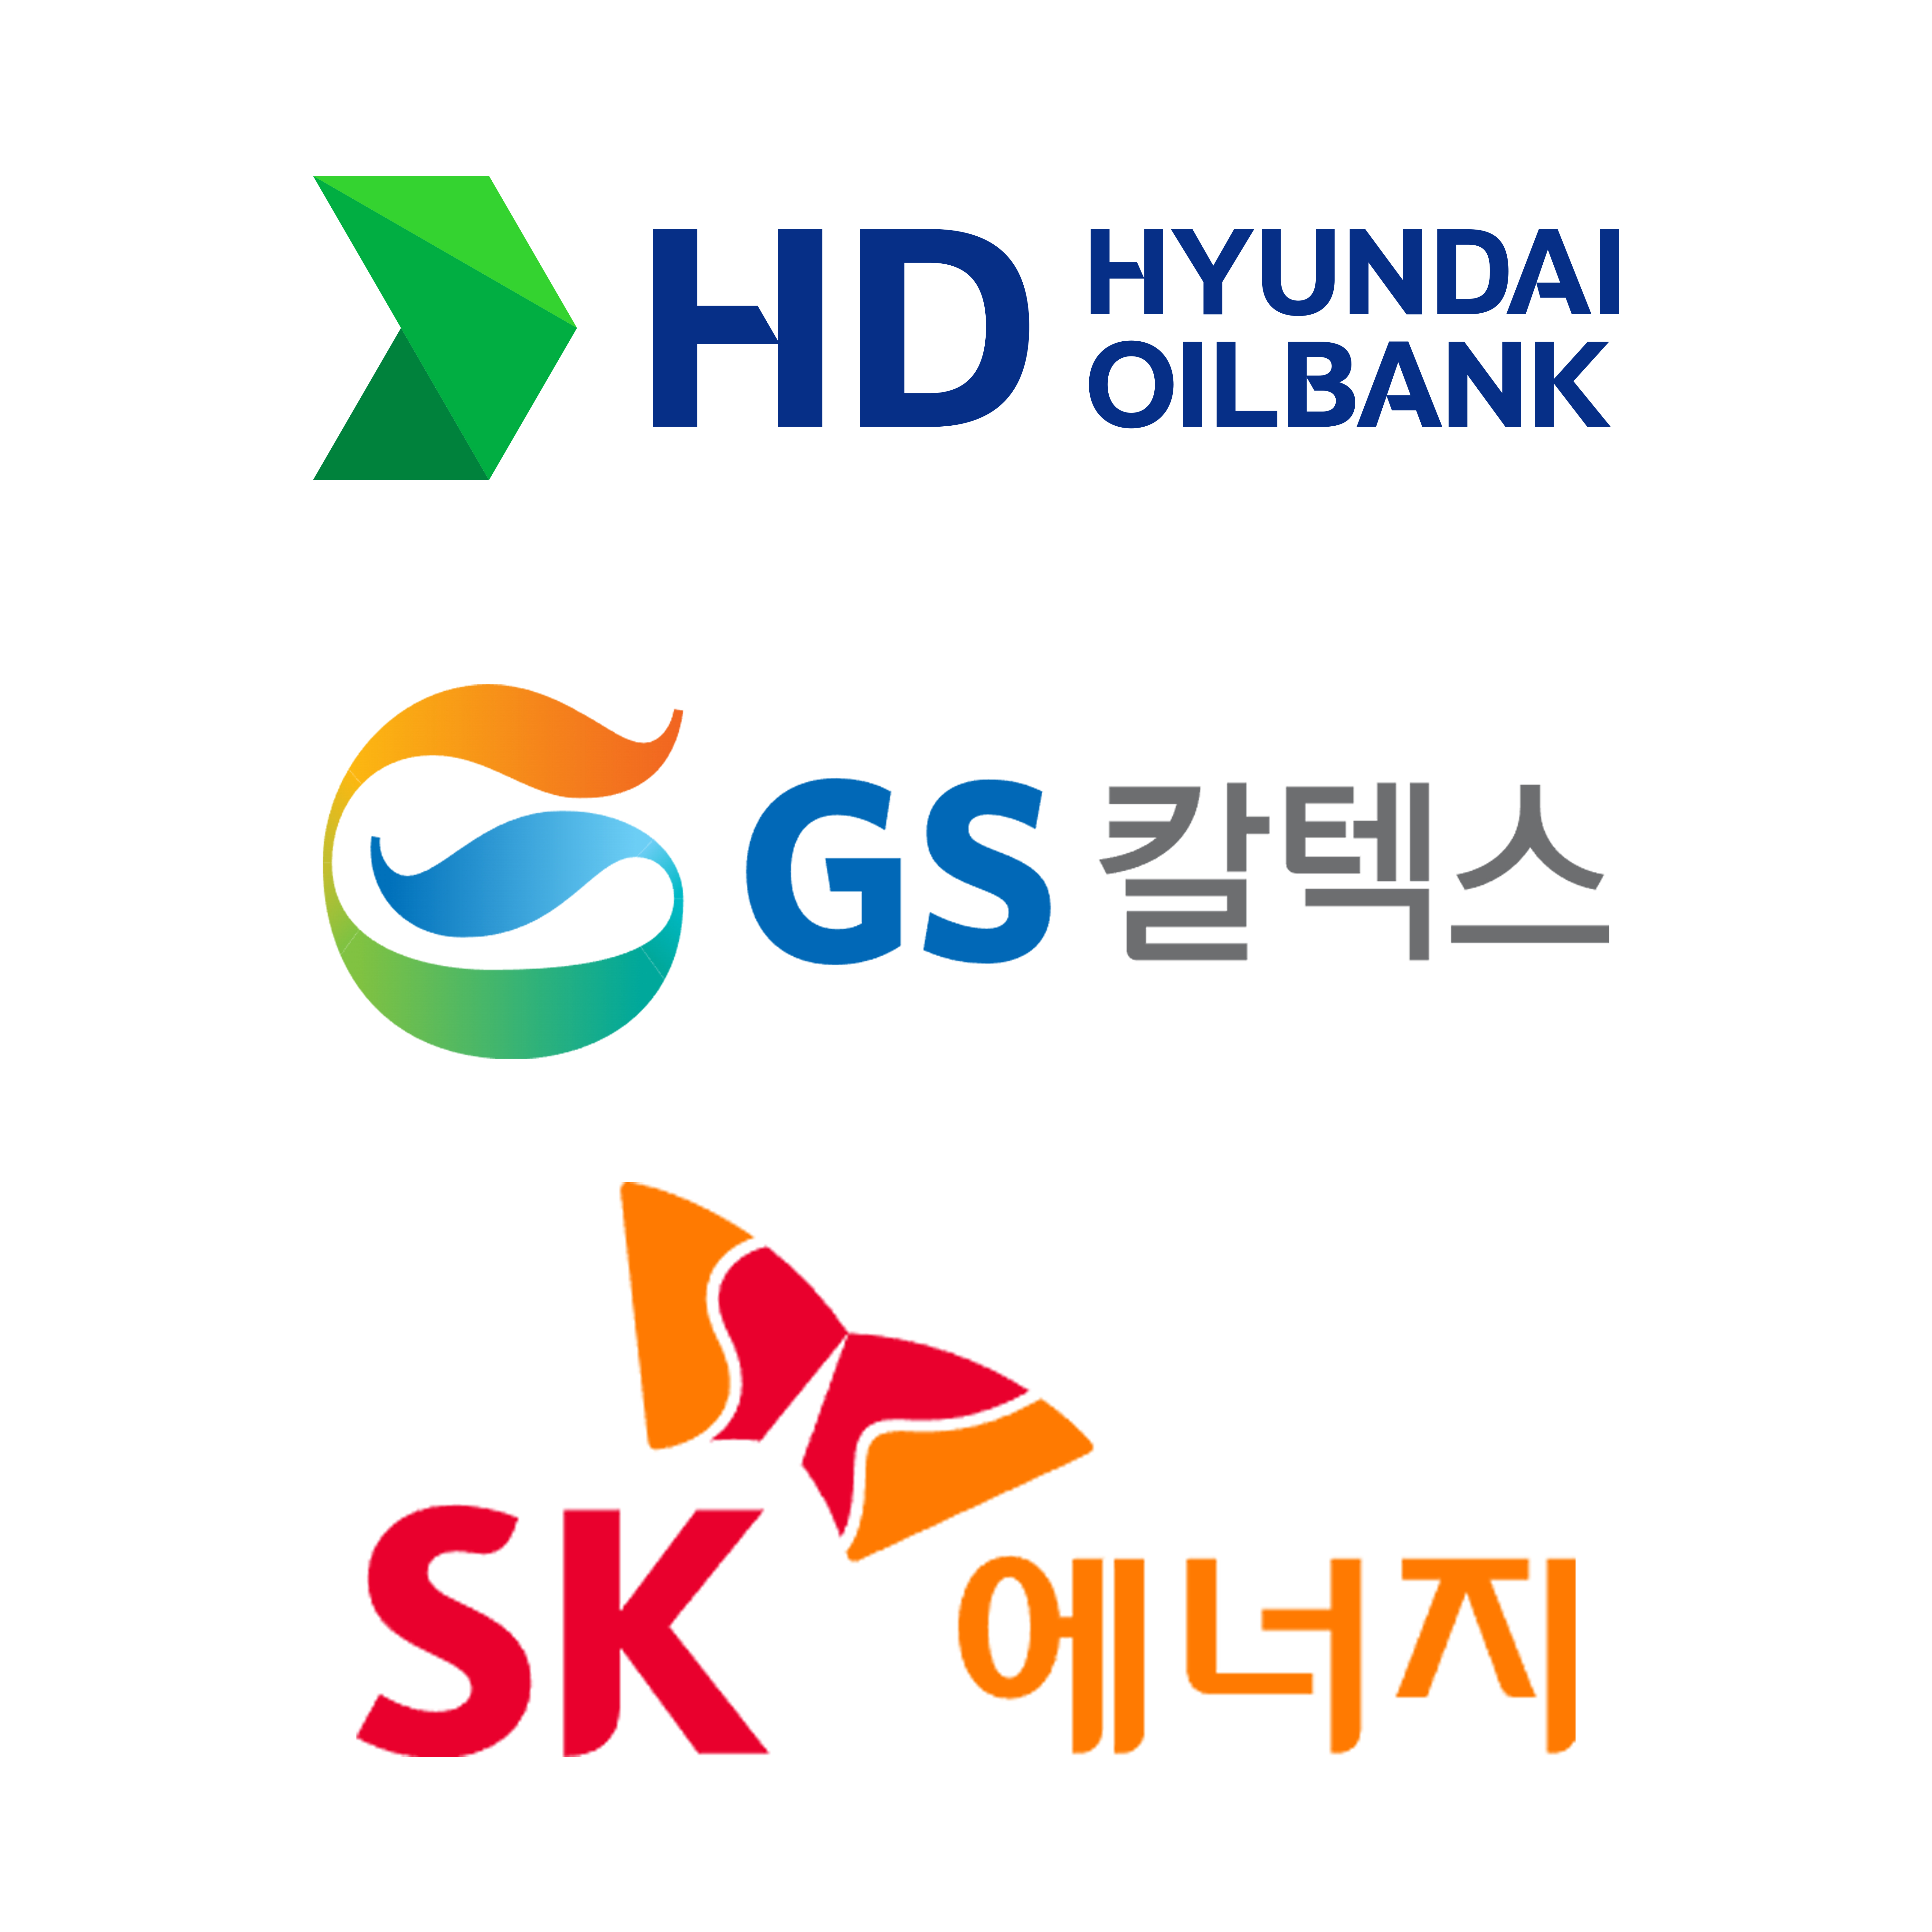 HD현대오일뱅크, GS칼텍스, SK에너지 로고